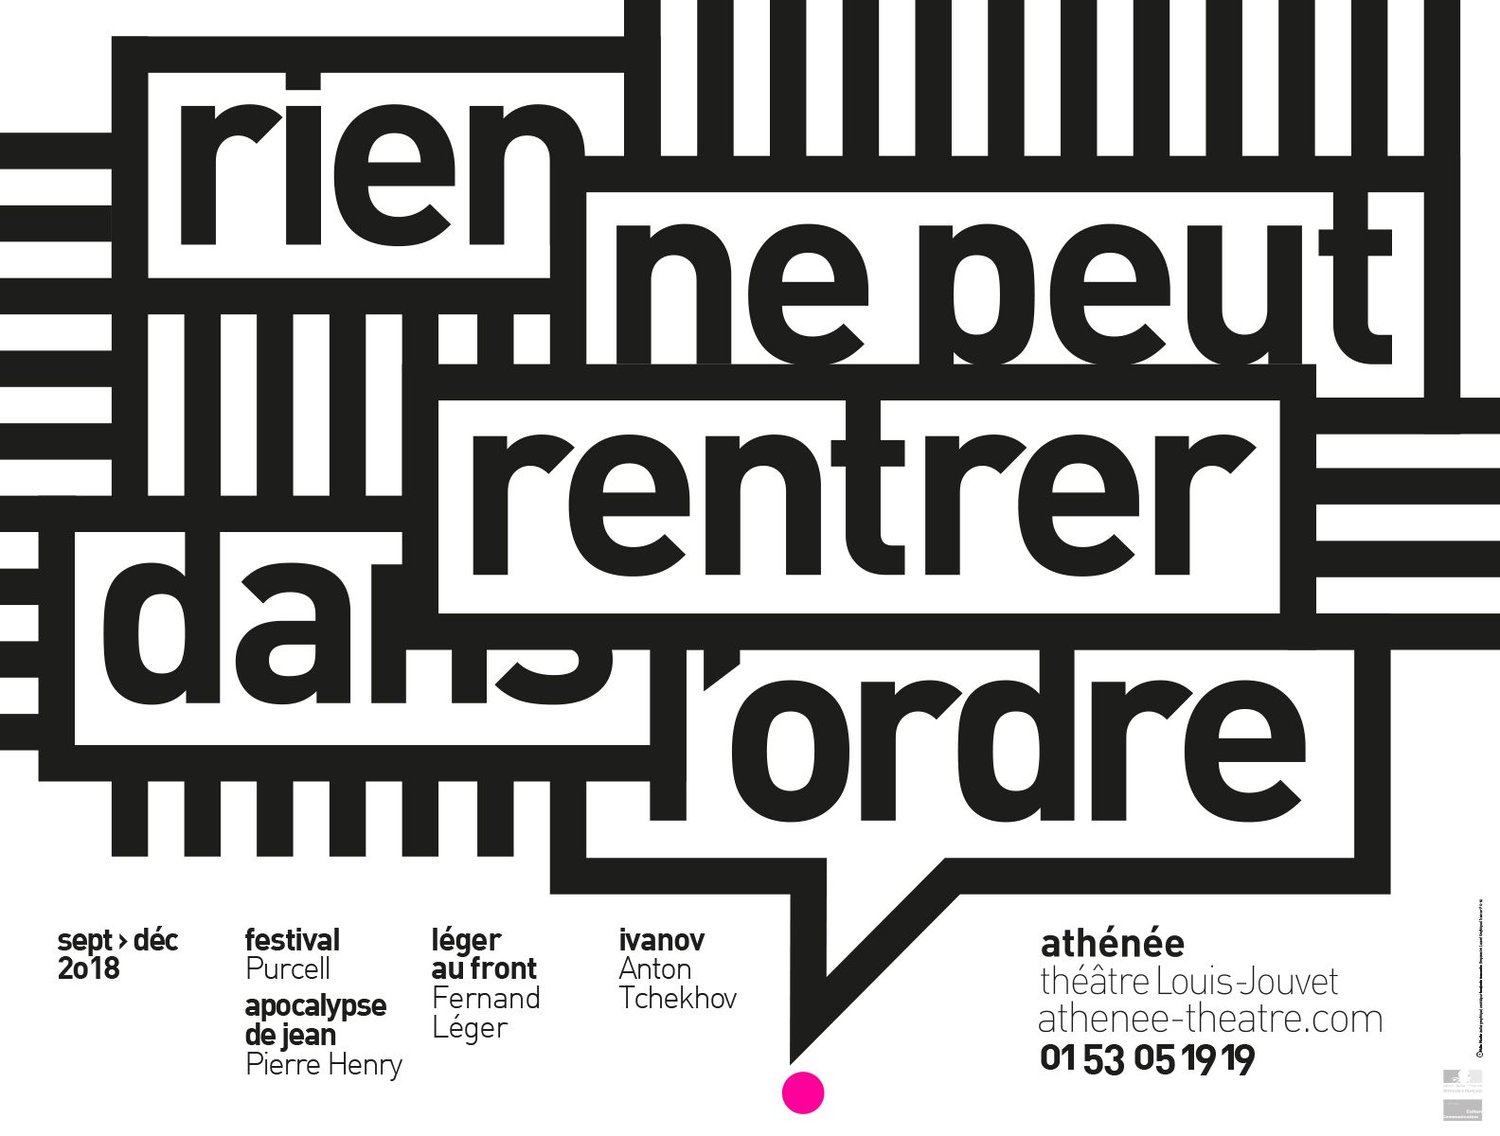 Image of Théâtre de l'Athénée - poster #5